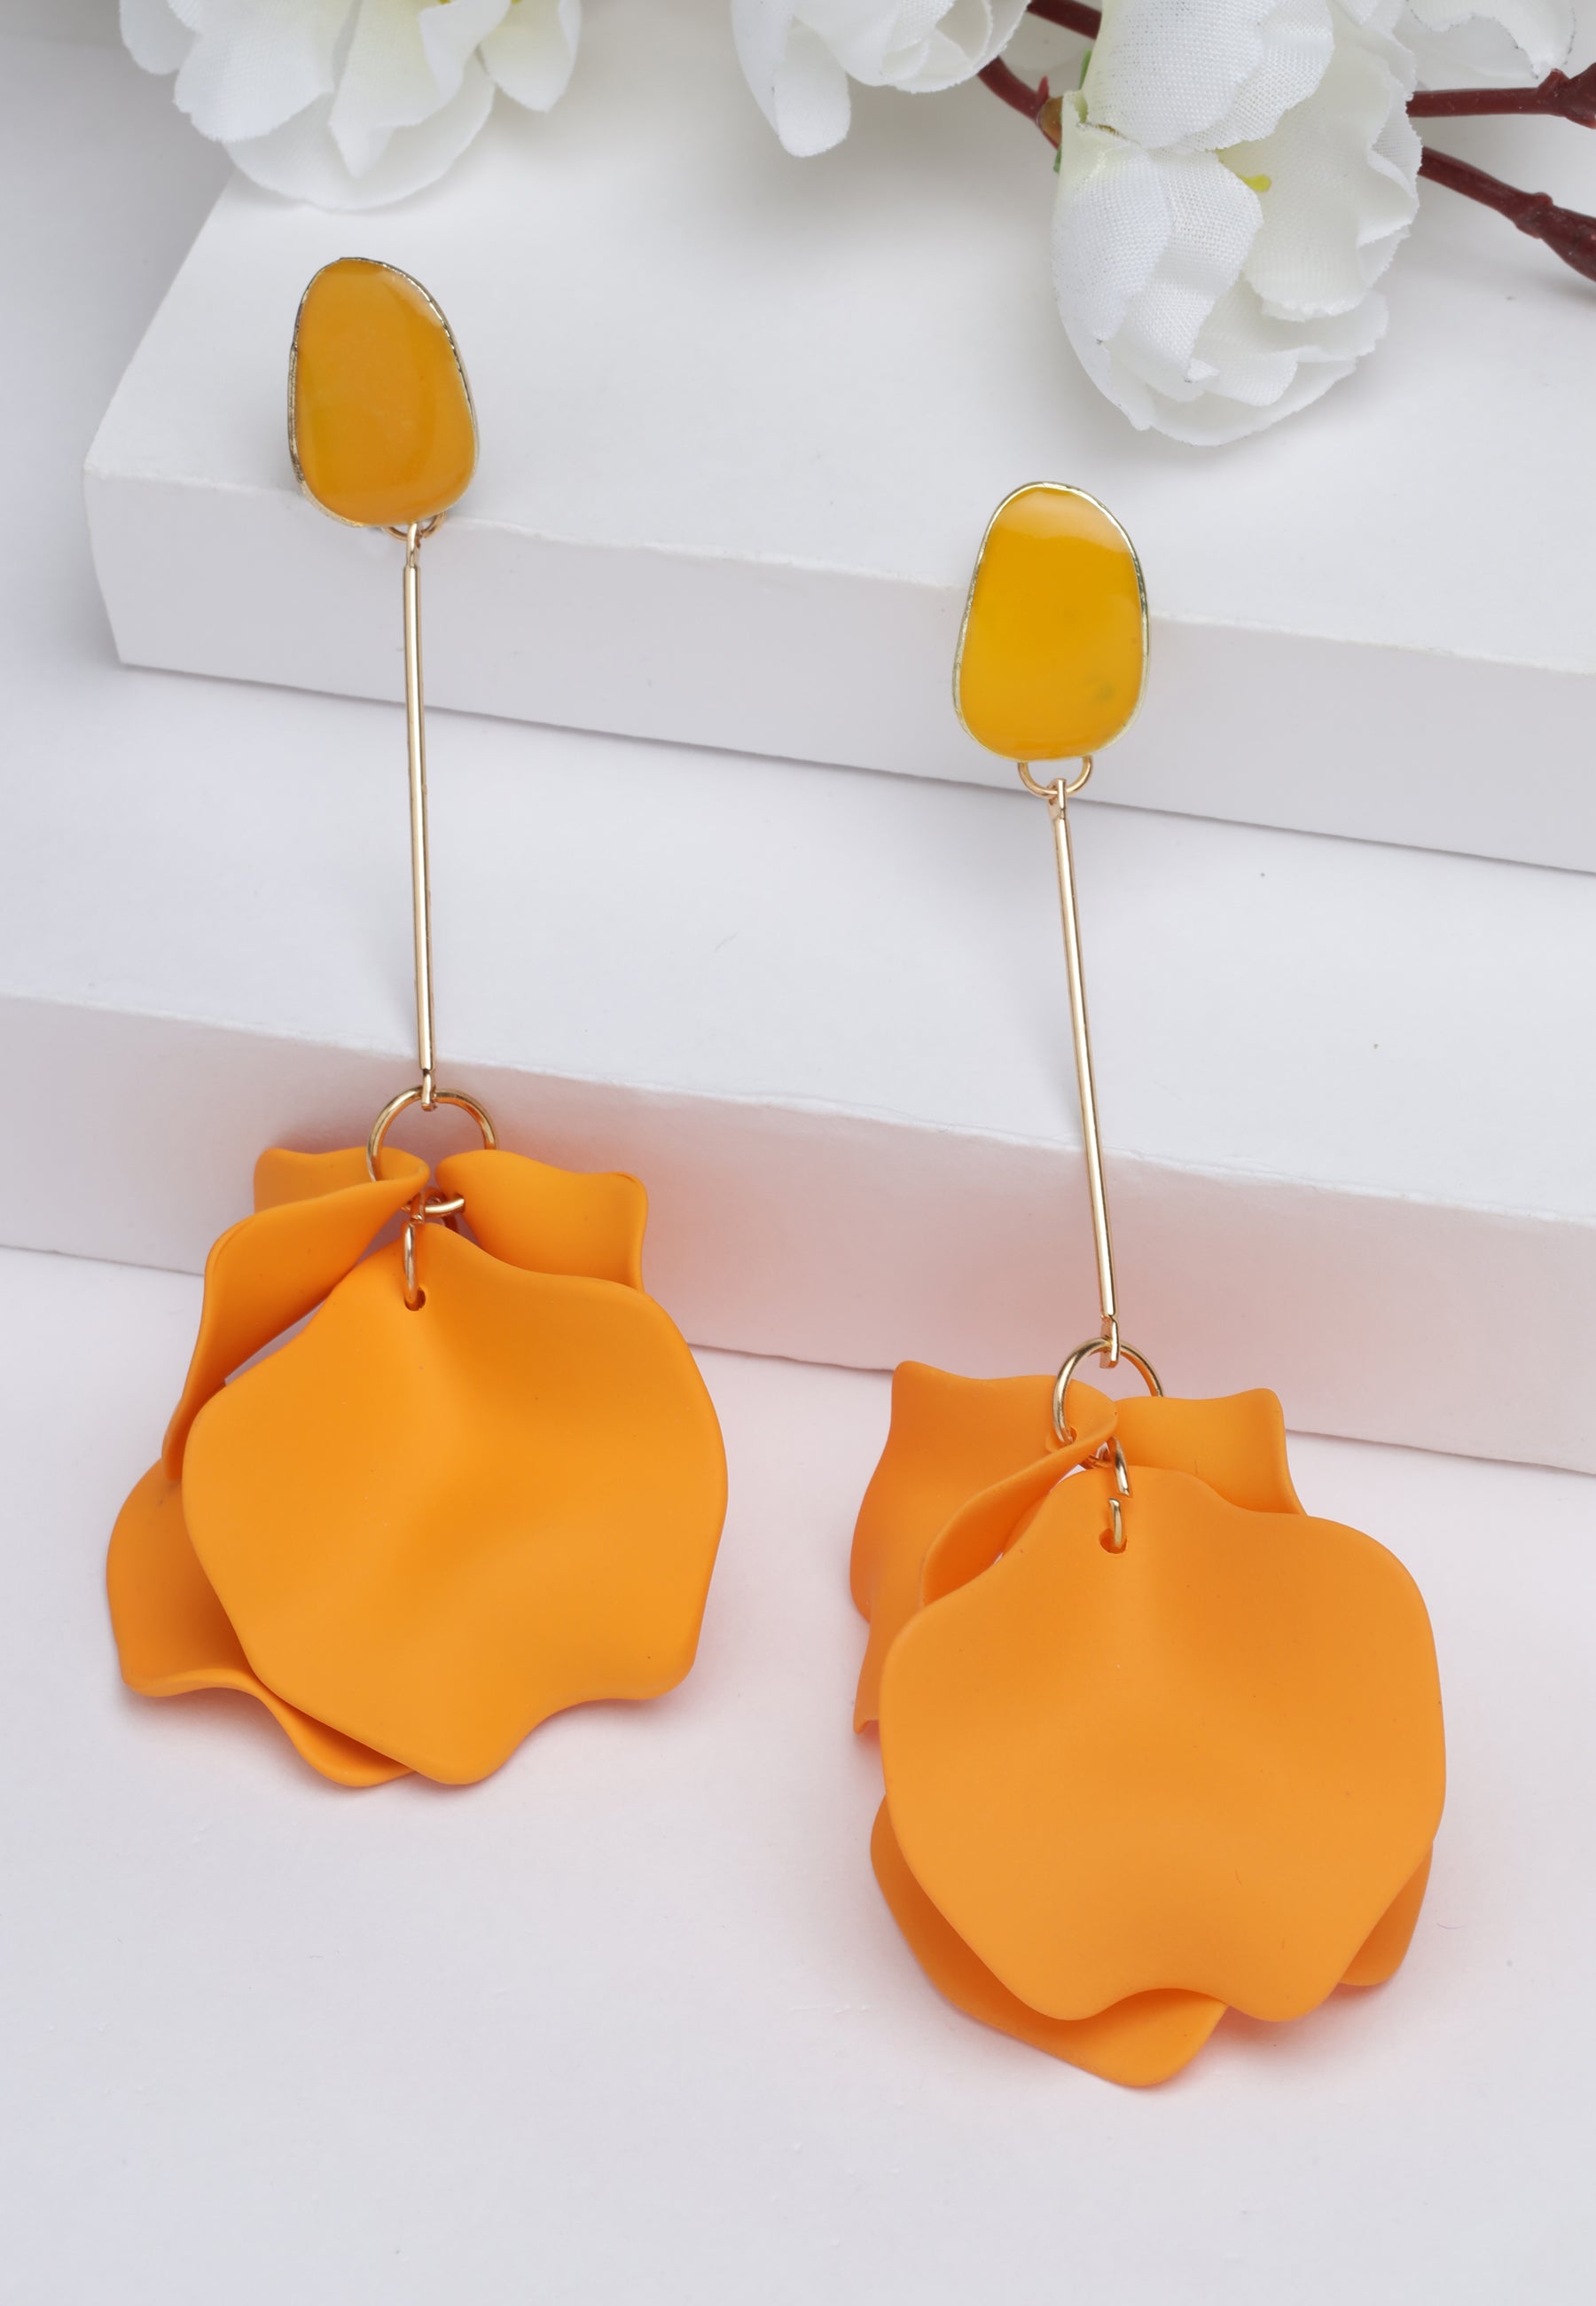 Kolczyki w kształcie płatków w kolorze pomarańczowym